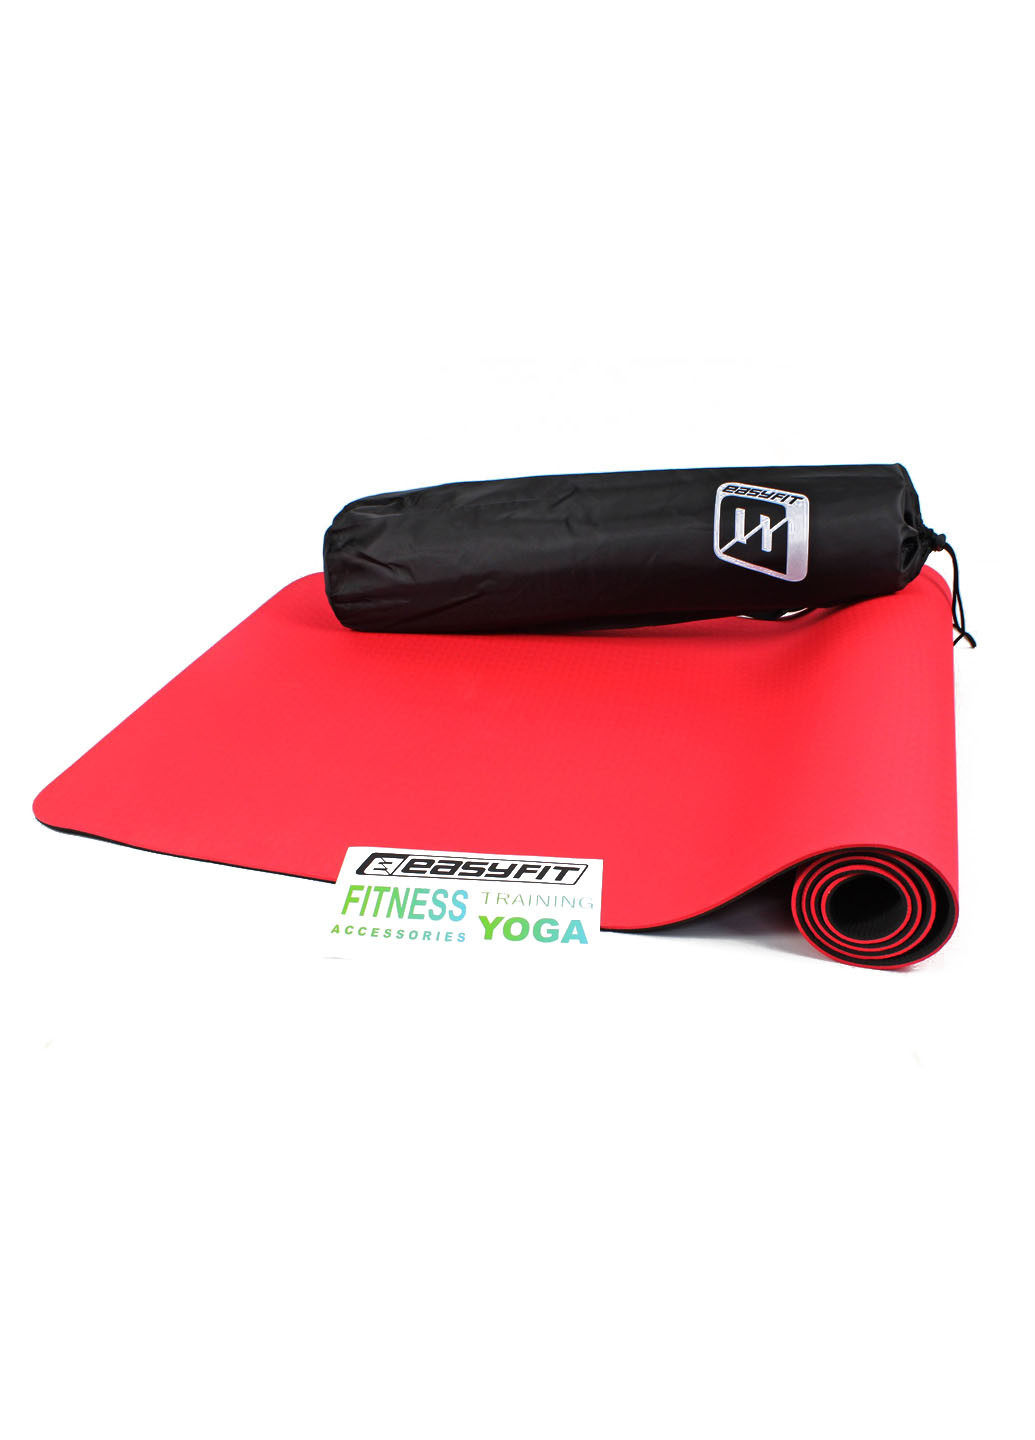 Коврик для йоги TPE+TC ECO-Friendly 6 мм красный с черным (мат-каремат спортивный, йогамат для фитнеса, пилатеса) EasyFit (237596301)